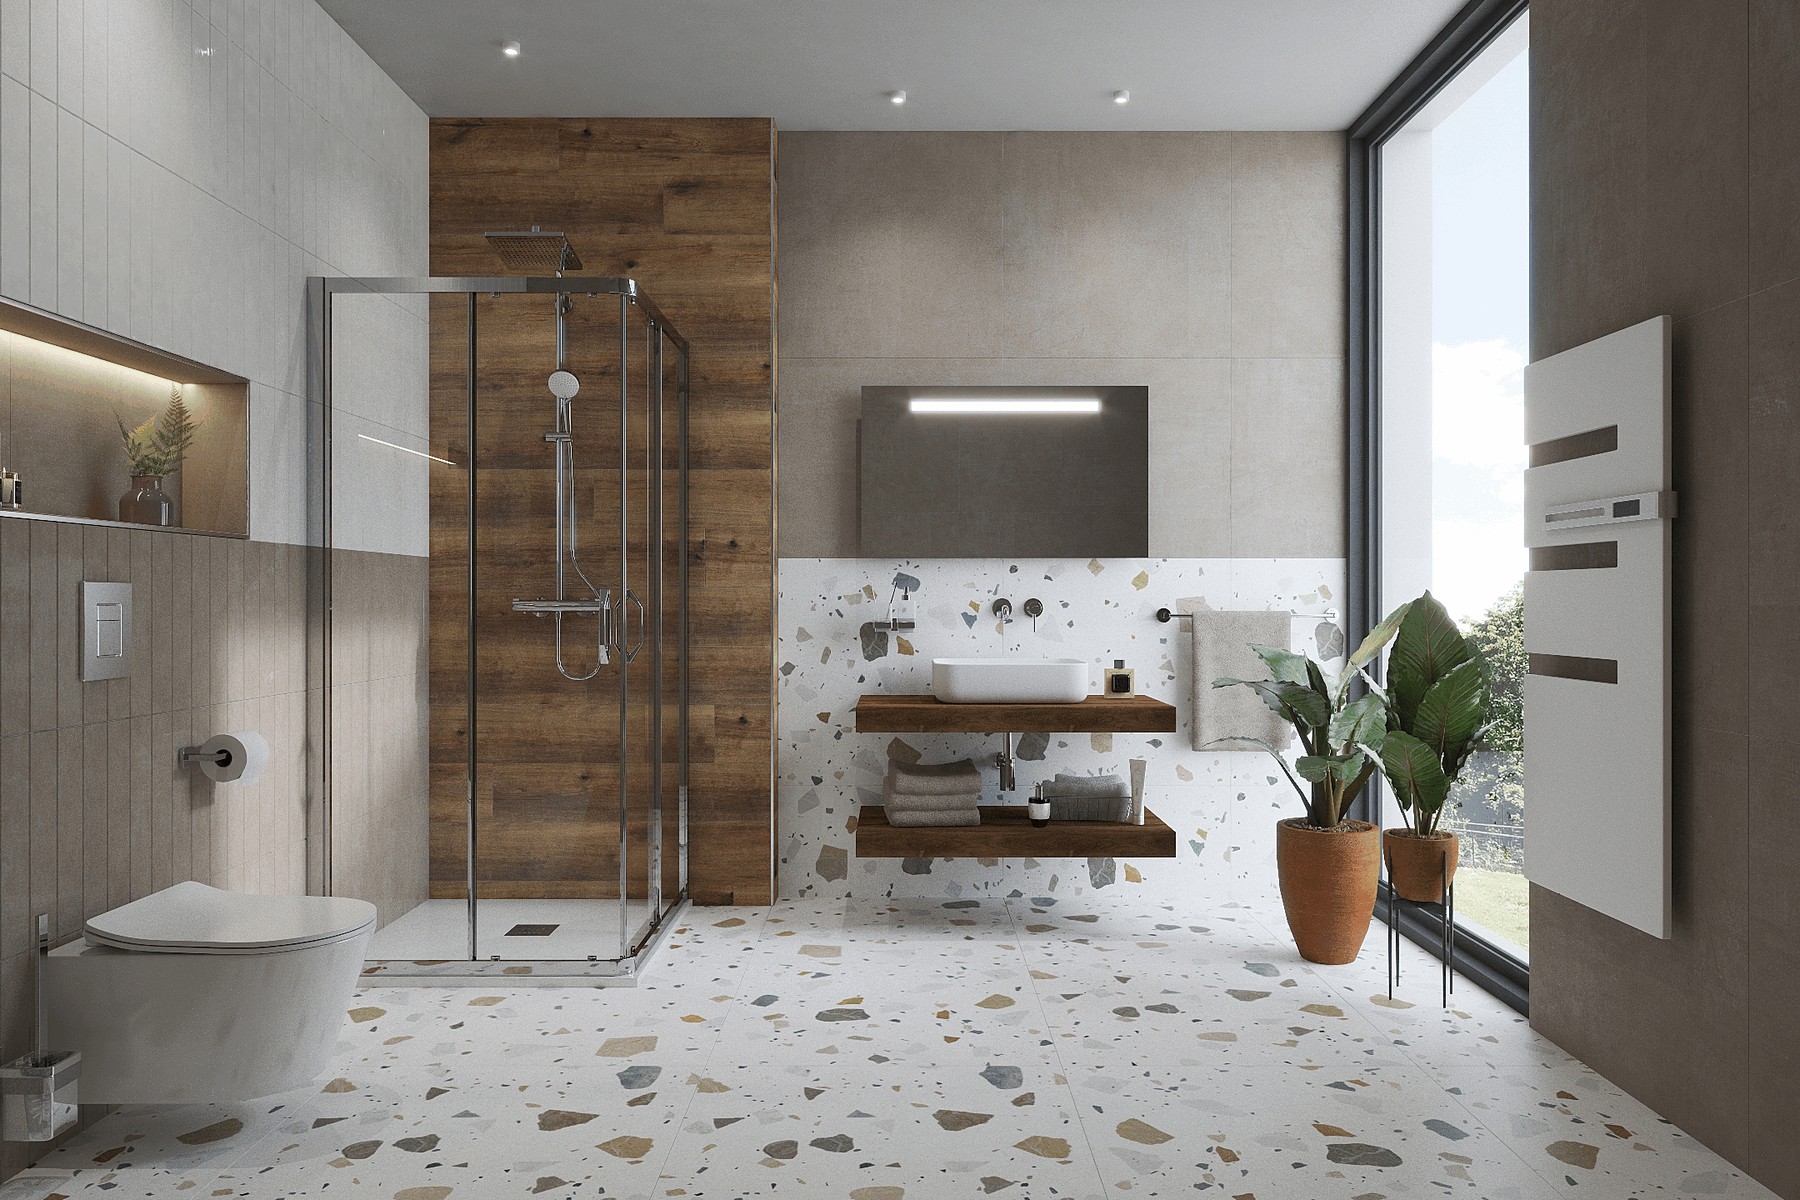 Salle de bain minimaliste et épurée : inspirez-vous du style Japandi